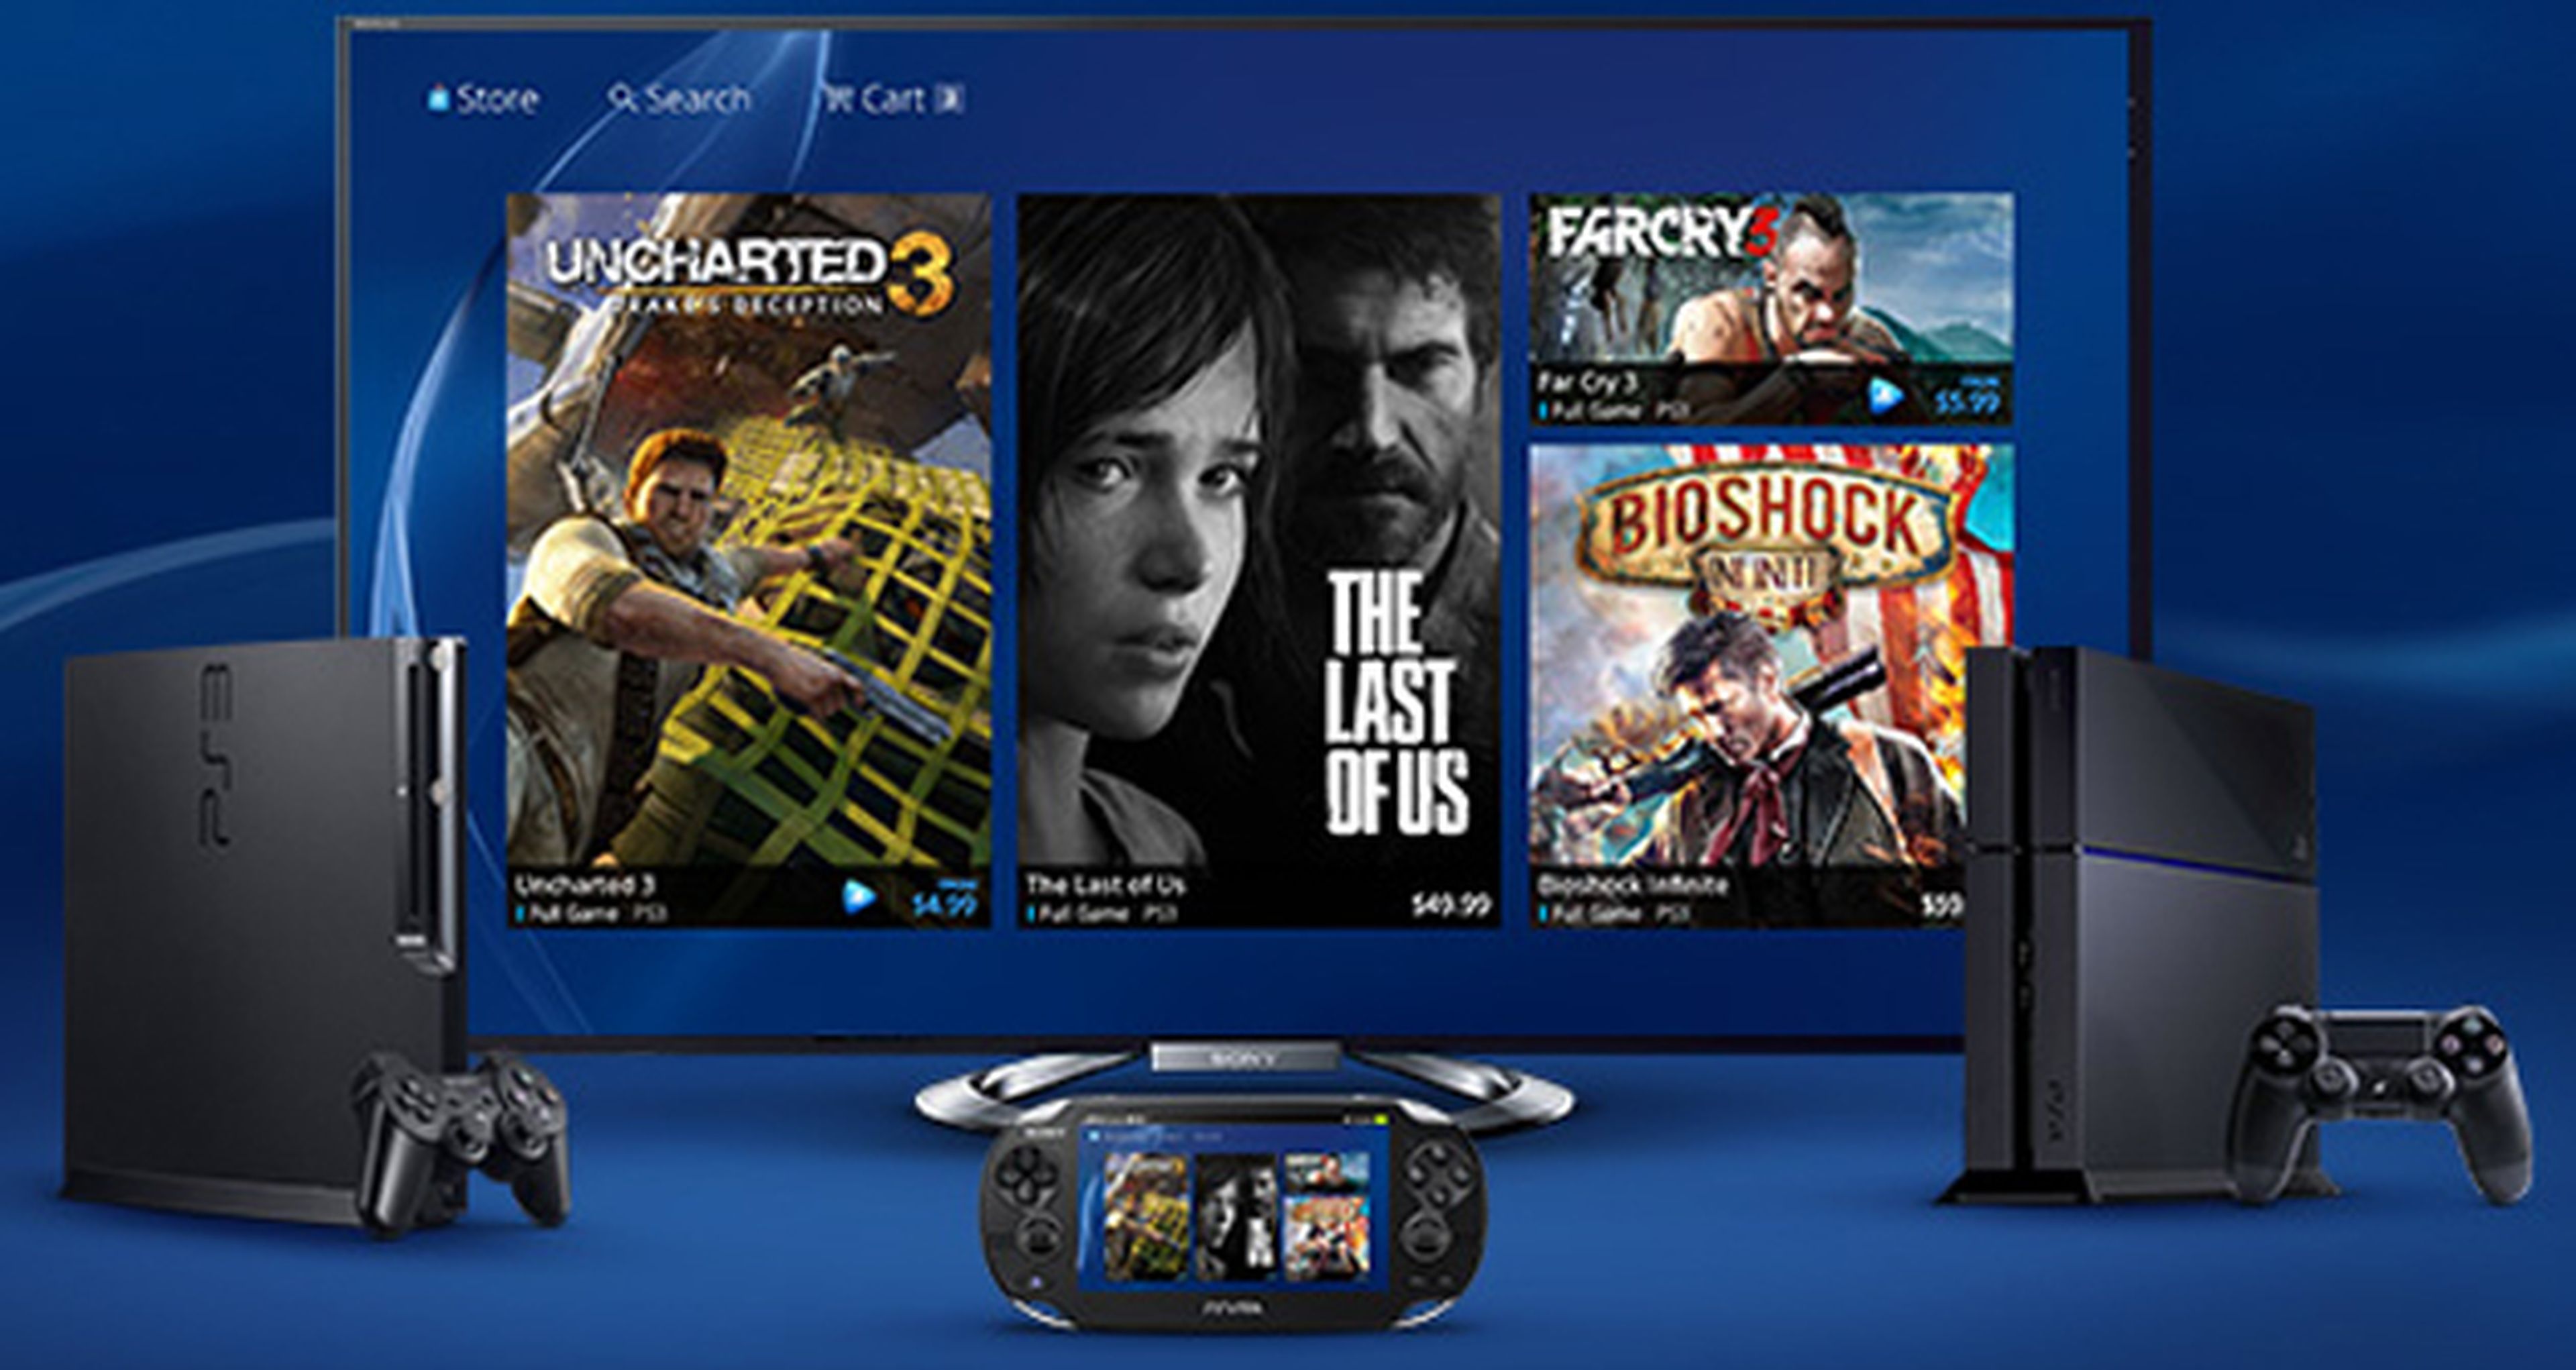 La beta PS Now llega a los televisores de Sony